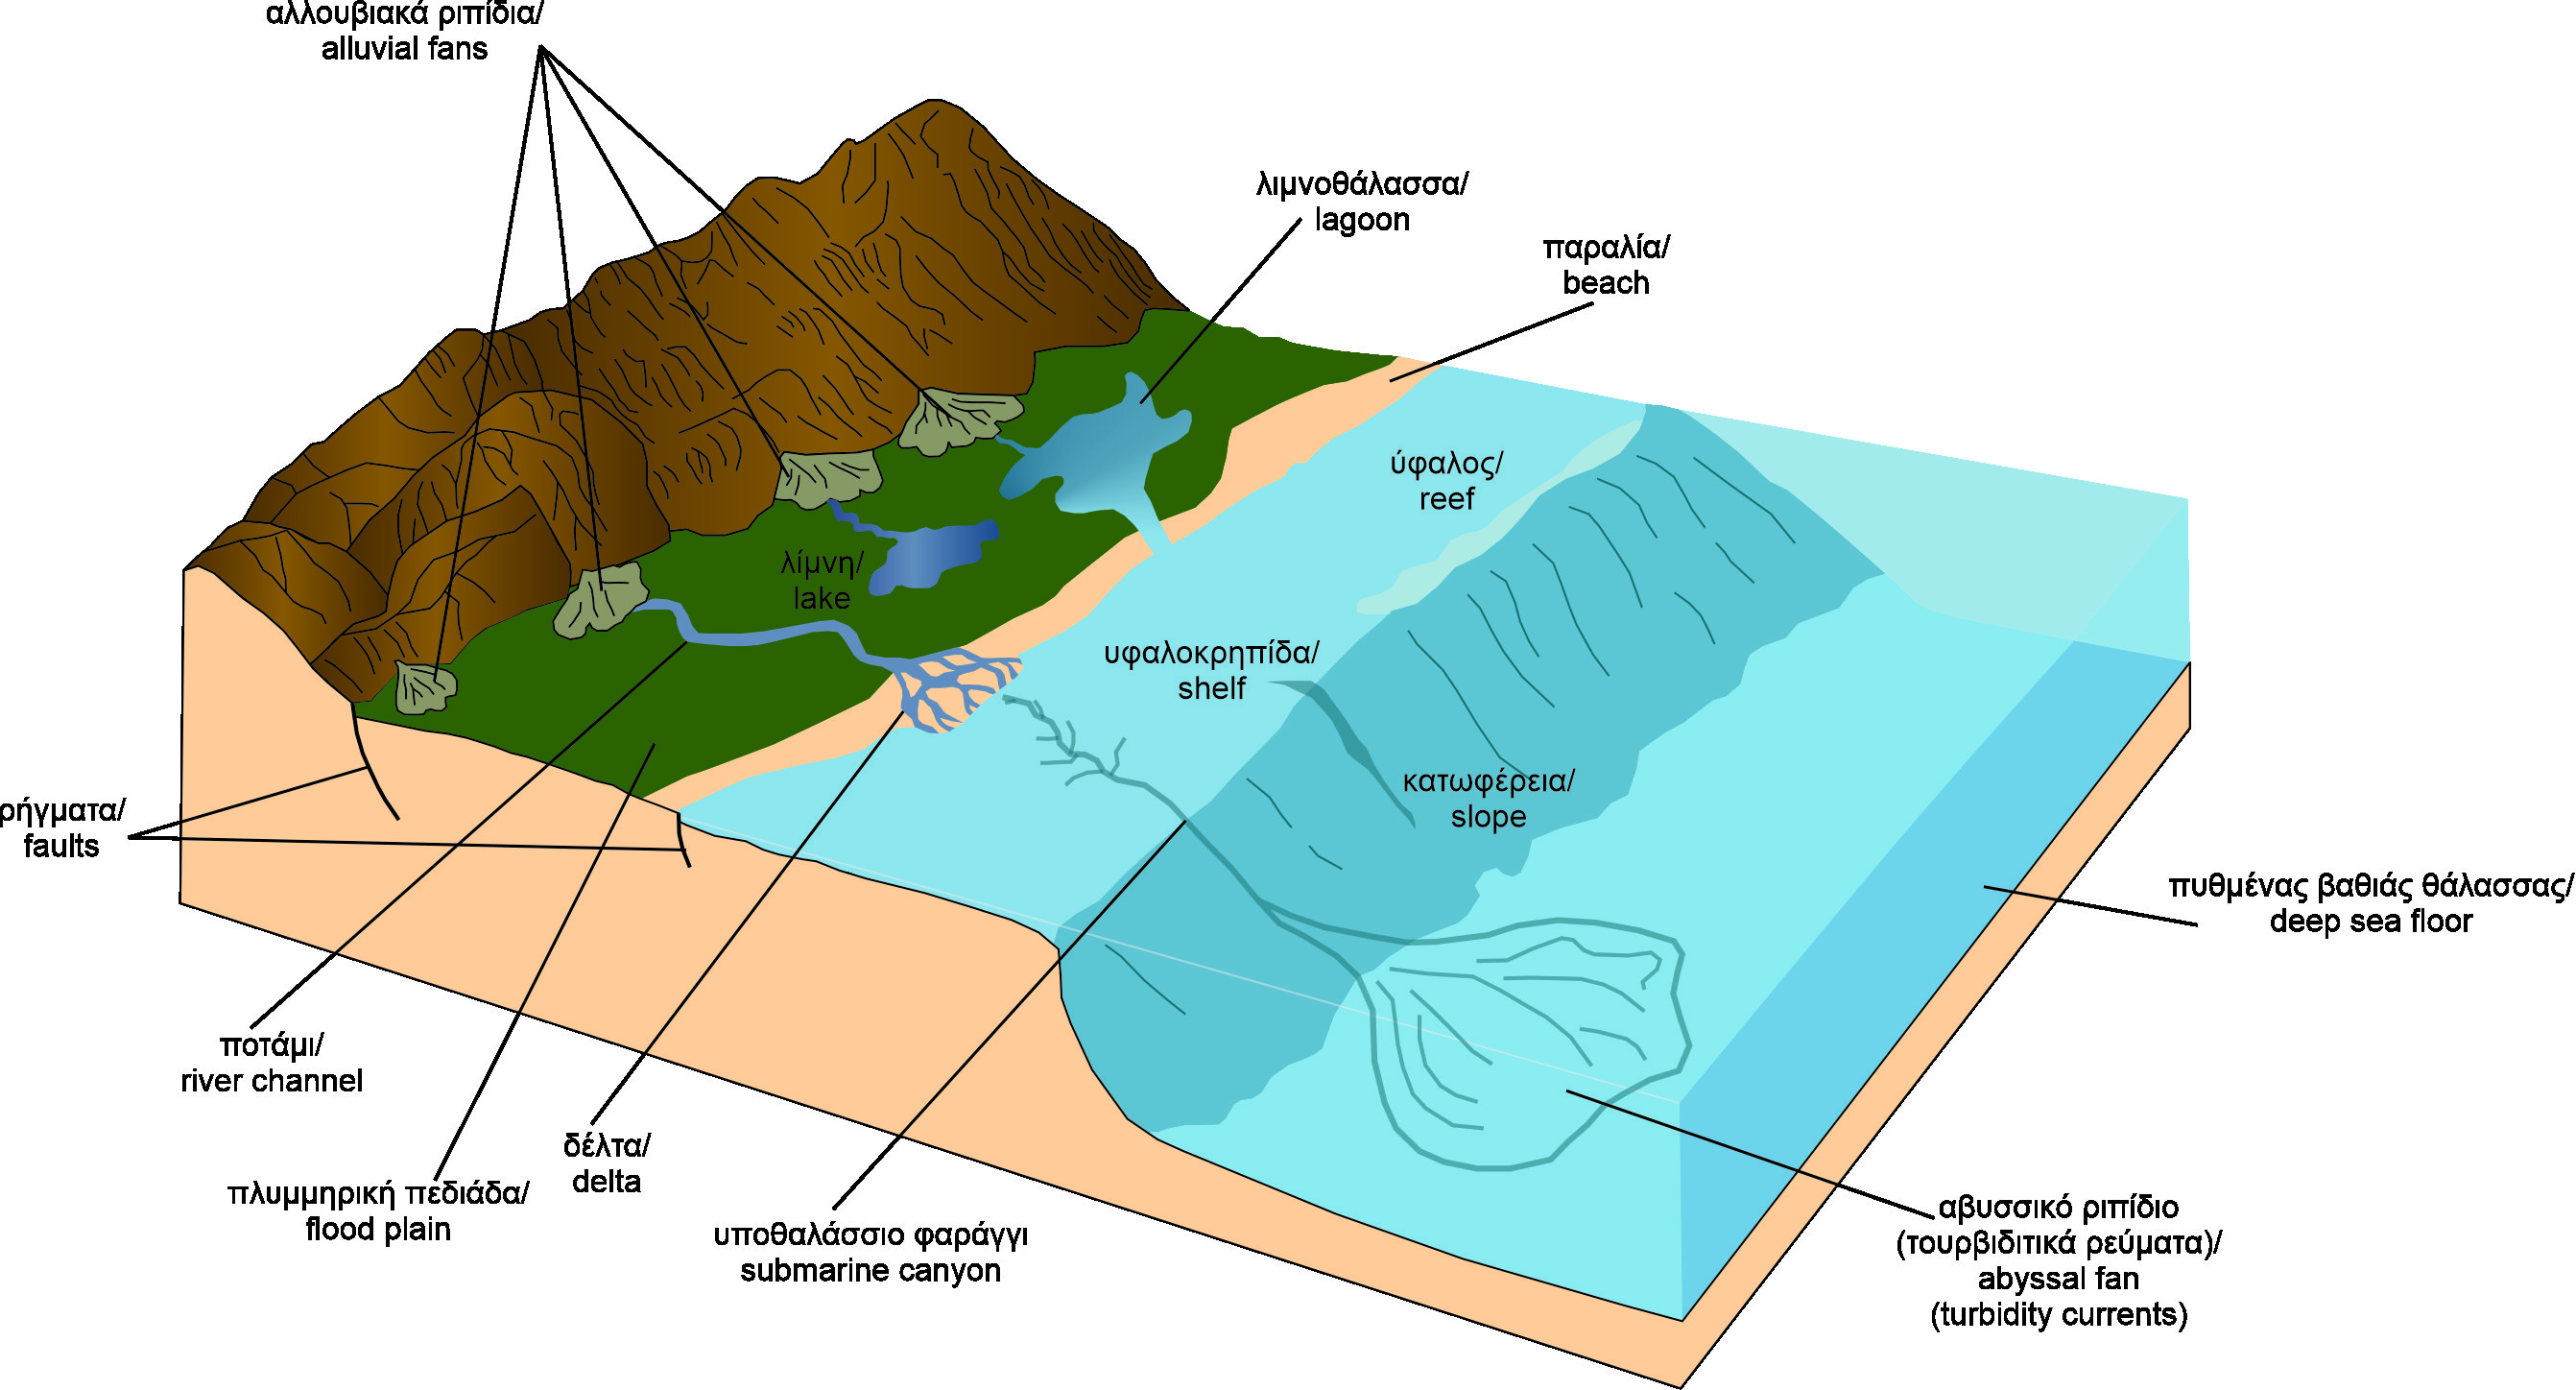 Σχηματική απεικόνιση της δημιουργίας των αργιλικών ιζημάτων της παραλίας του Ξι τα οποία αποτέθηκαν σε θαλάσσιο περιβάλλον 